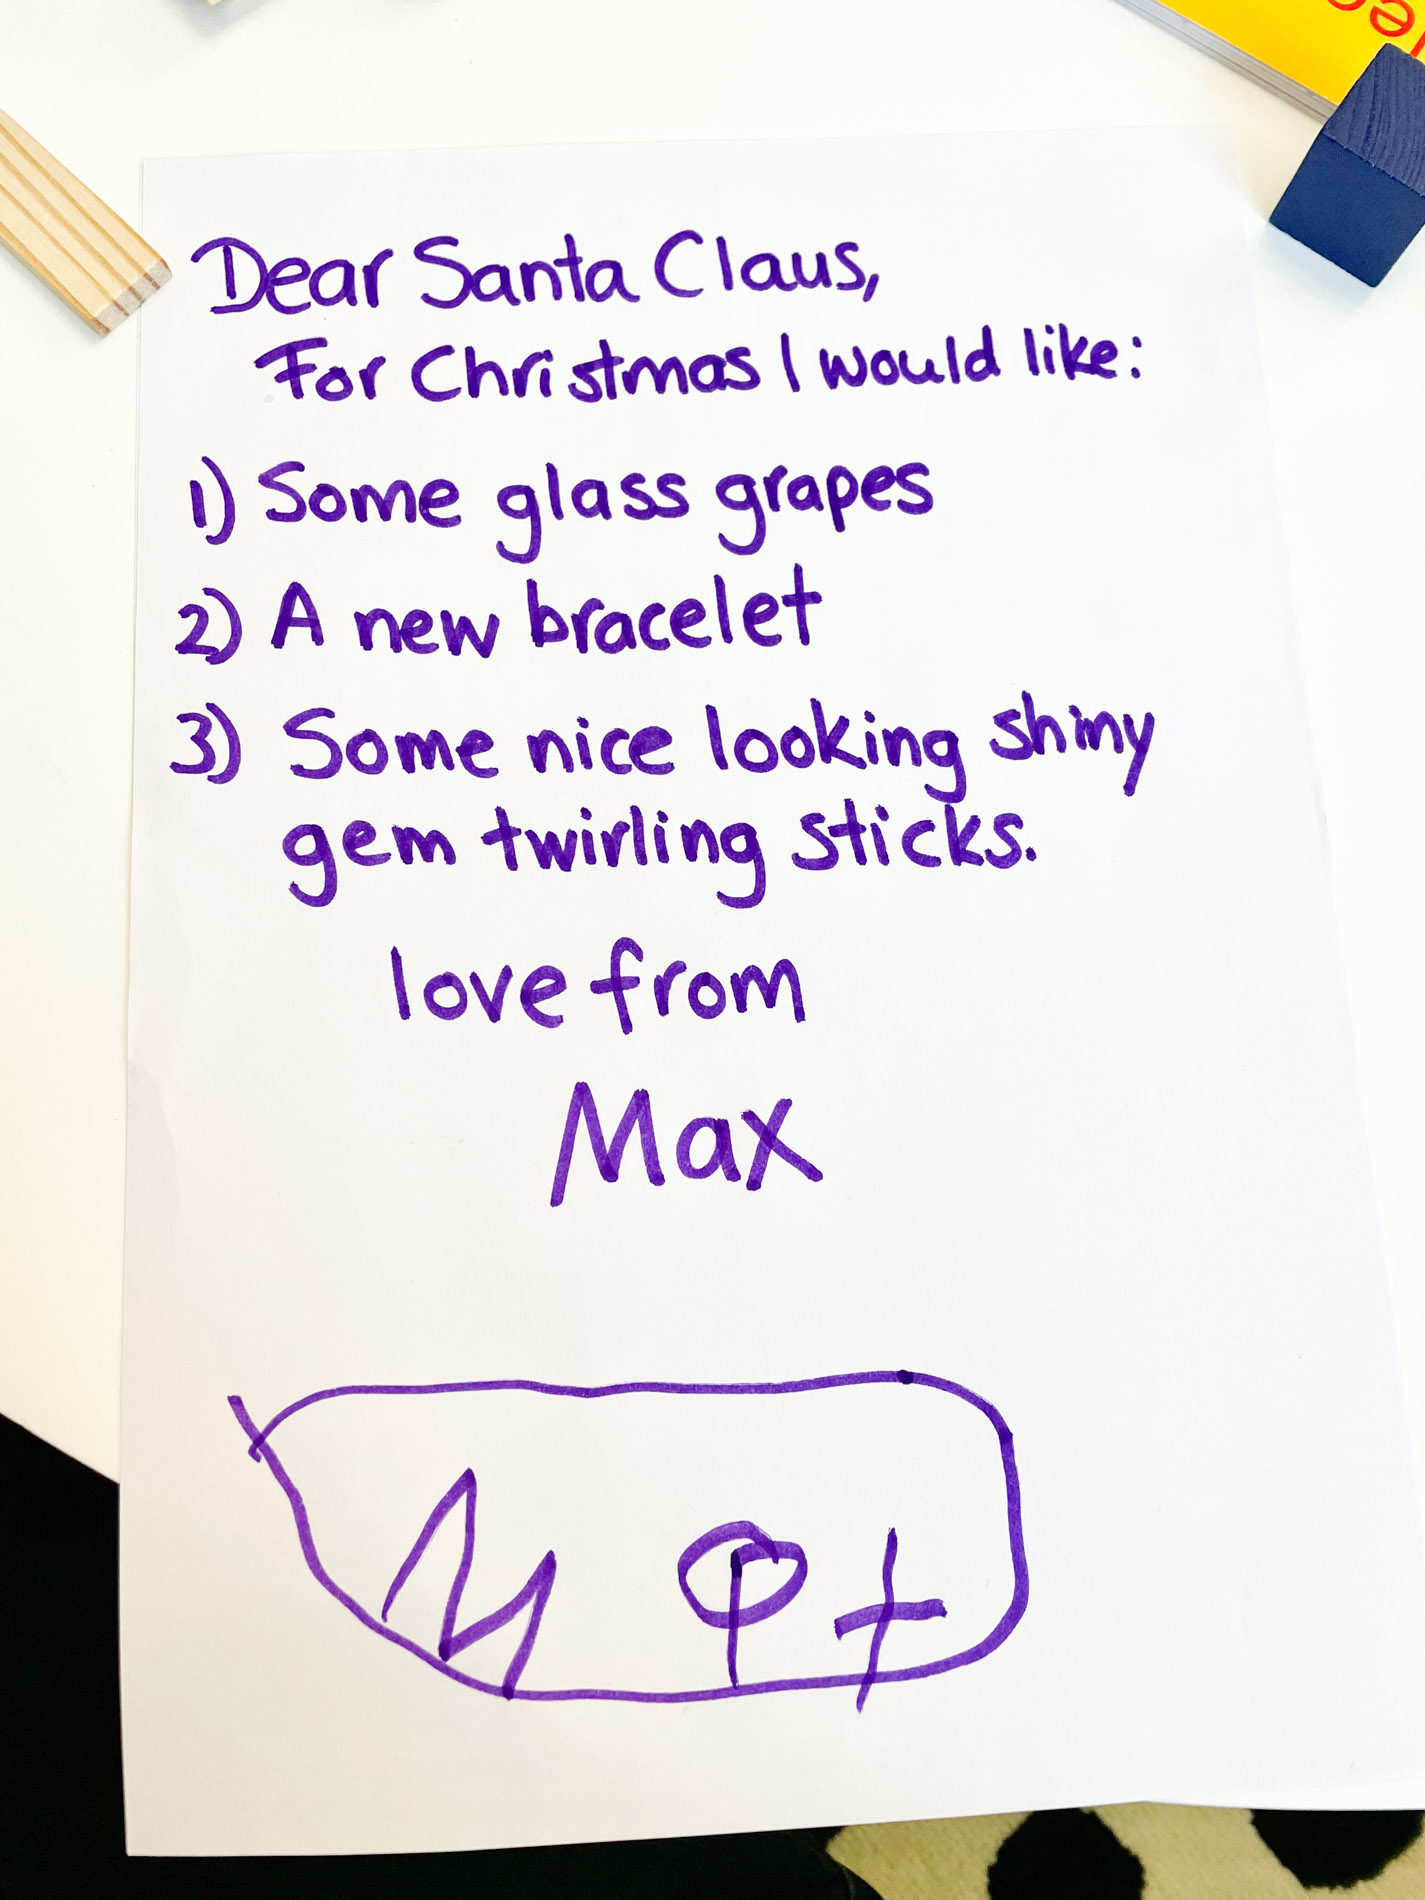 Max's letter to Santa, 2021